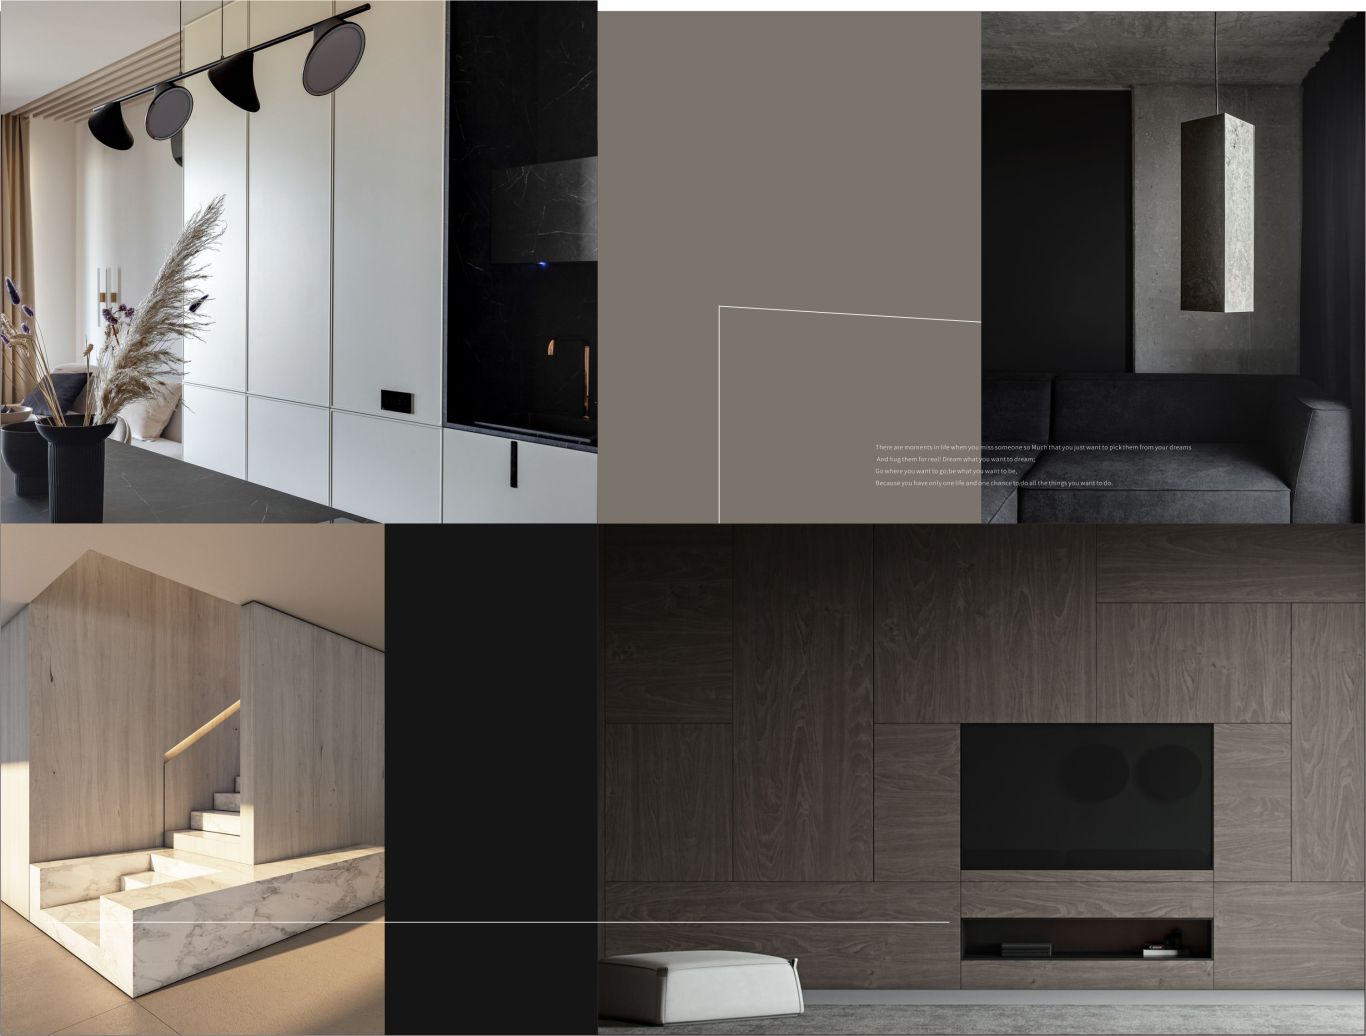 HOMU室内空间设计公司品牌形象VI图10